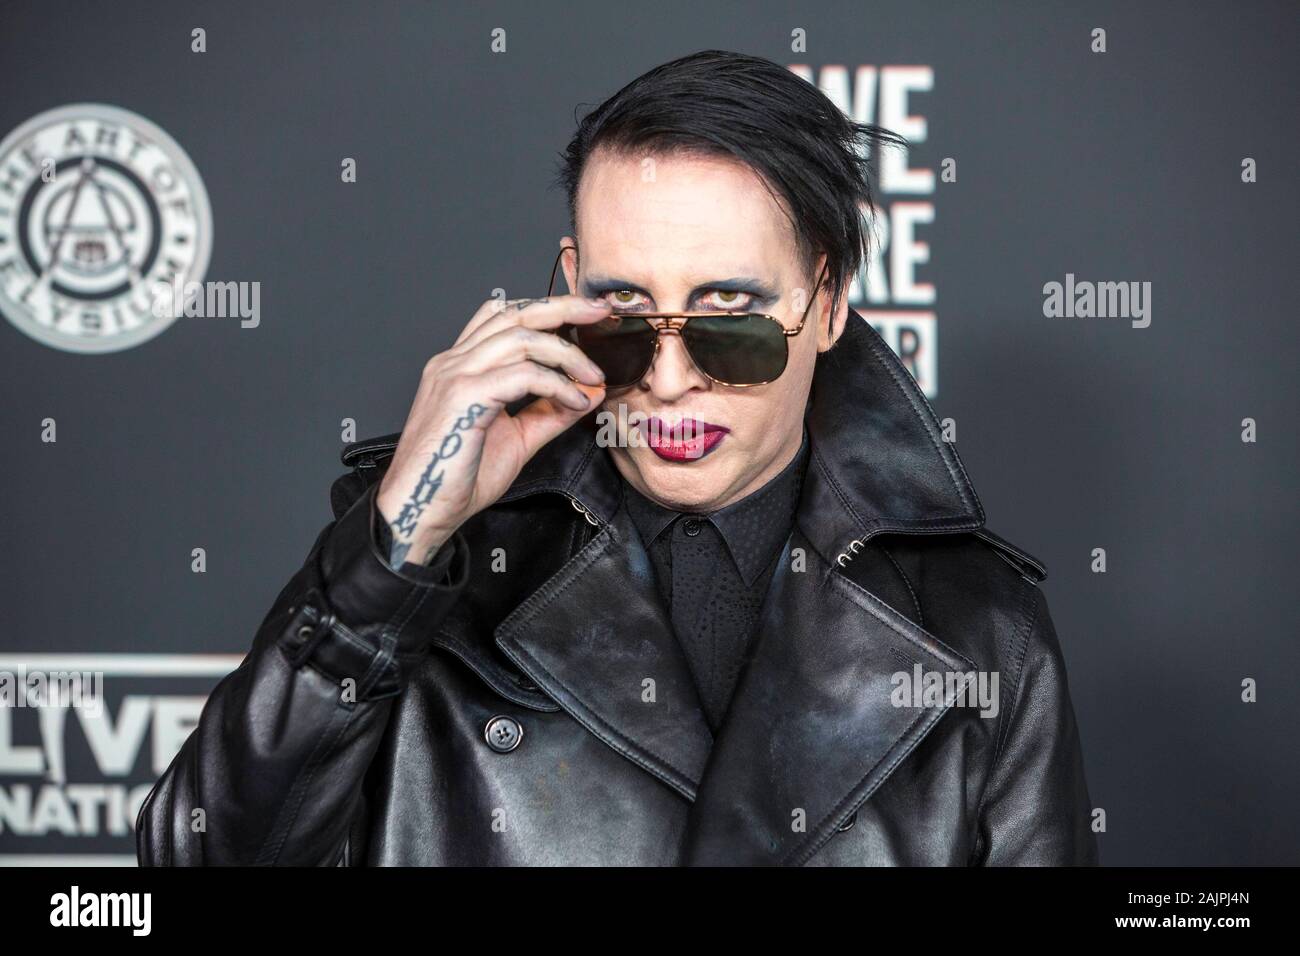 Los Angeles, USA. 08Th Jan, 2020. Marilyn Manson participe à l'Art de l'Elysium's 13th Annual Black Tie expérience artistique "Heaven" au Palladium à Hollywood, Los Angeles, Californie, USA, le 04 janvier 2020. | conditions dans le monde entier : dpa Crédit photo alliance/Alamy Live News Banque D'Images